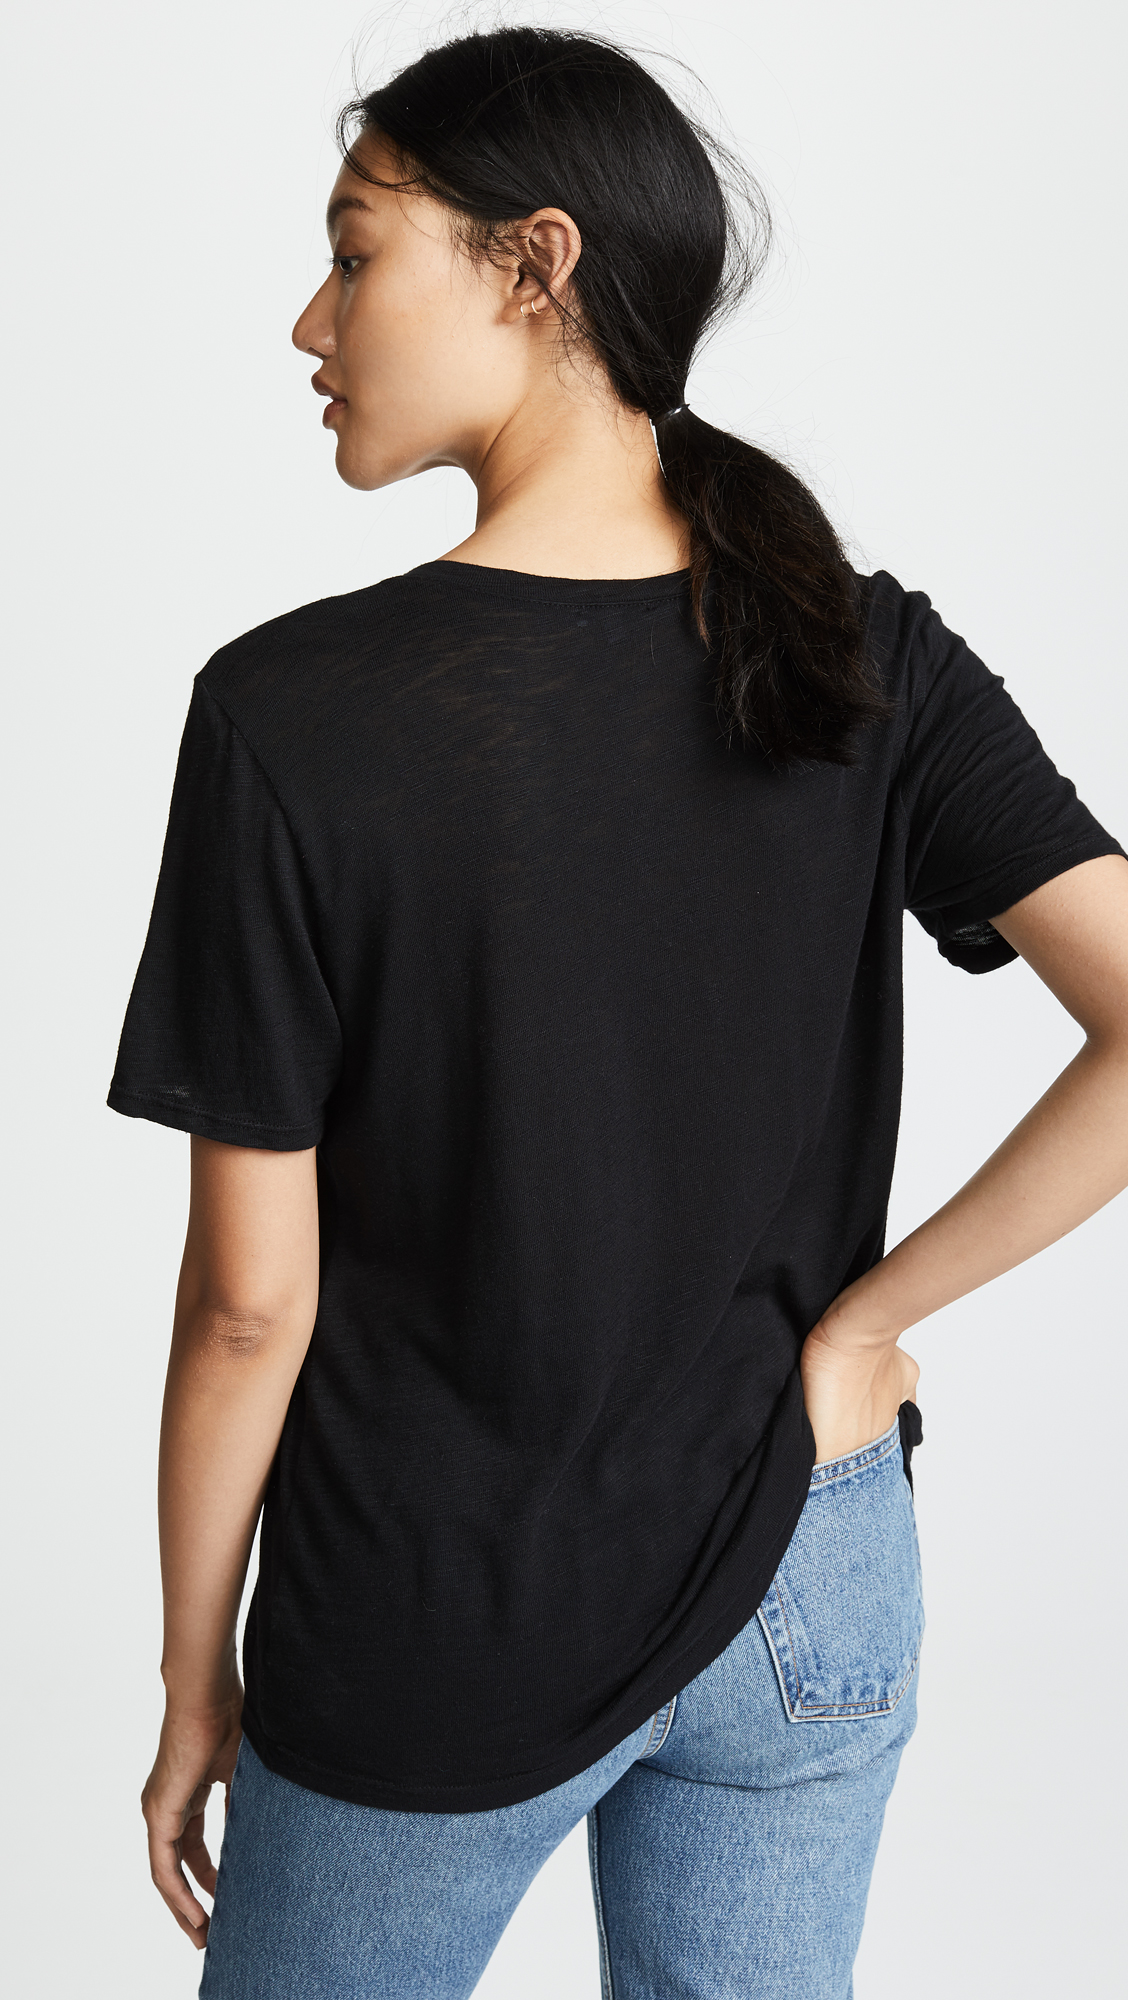 Splendid Women's Short-Sleeve V-Neck Tee T-Shirt